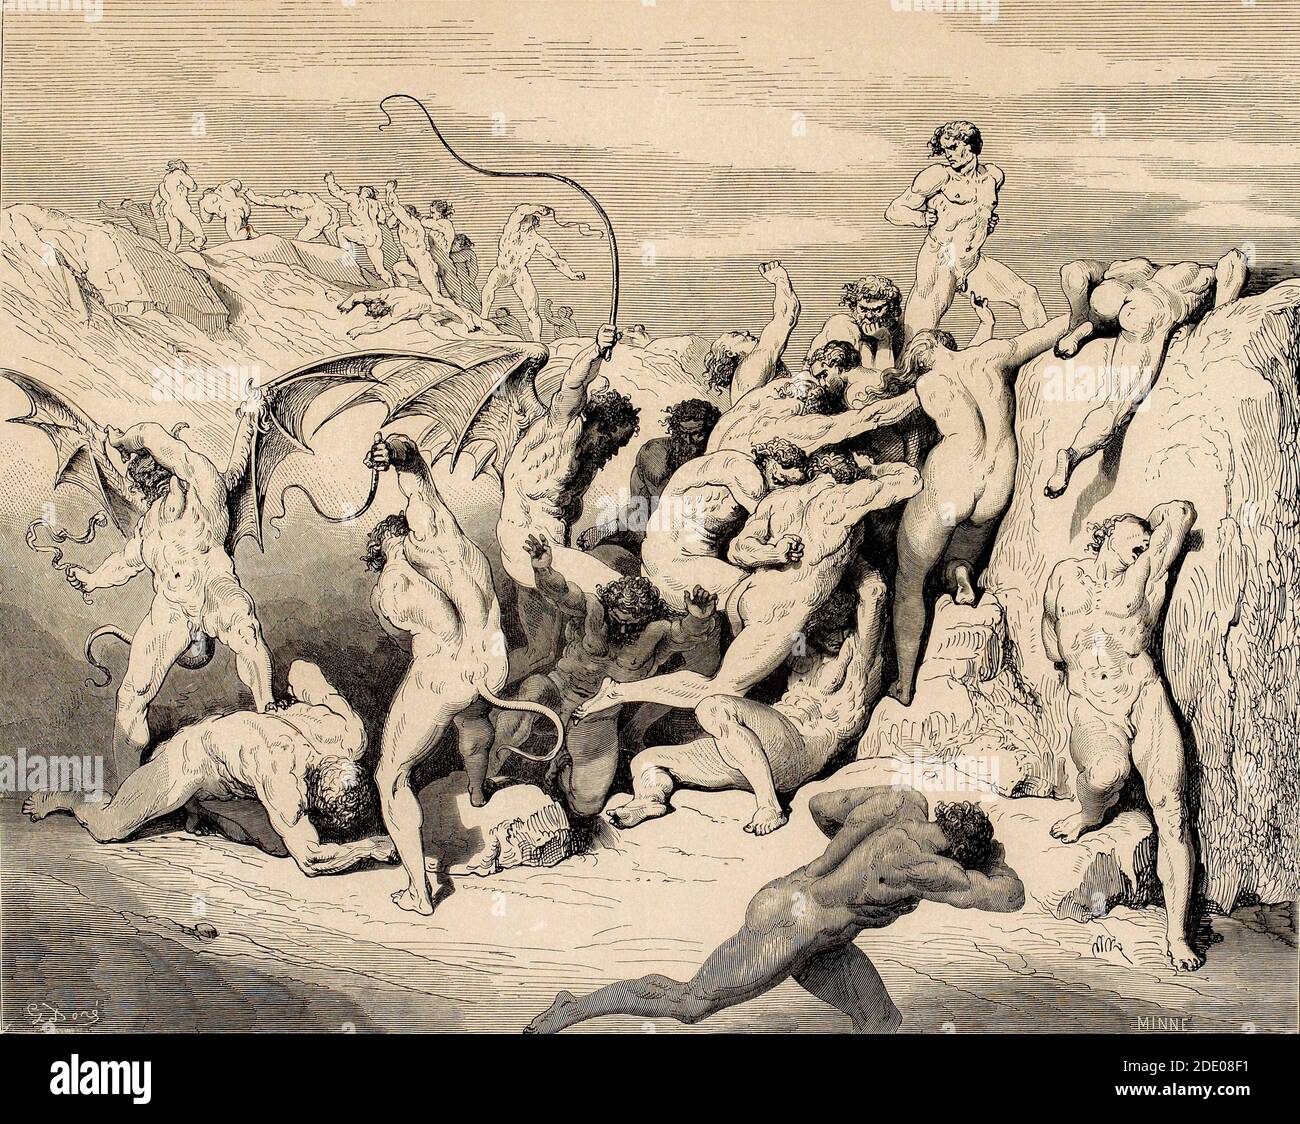 Dante Divina Commedia - Infierno - XVIII Canto - el Ruffians y los seductores - VIII Círculo - ilustración por Gustave Dorè Foto de stock